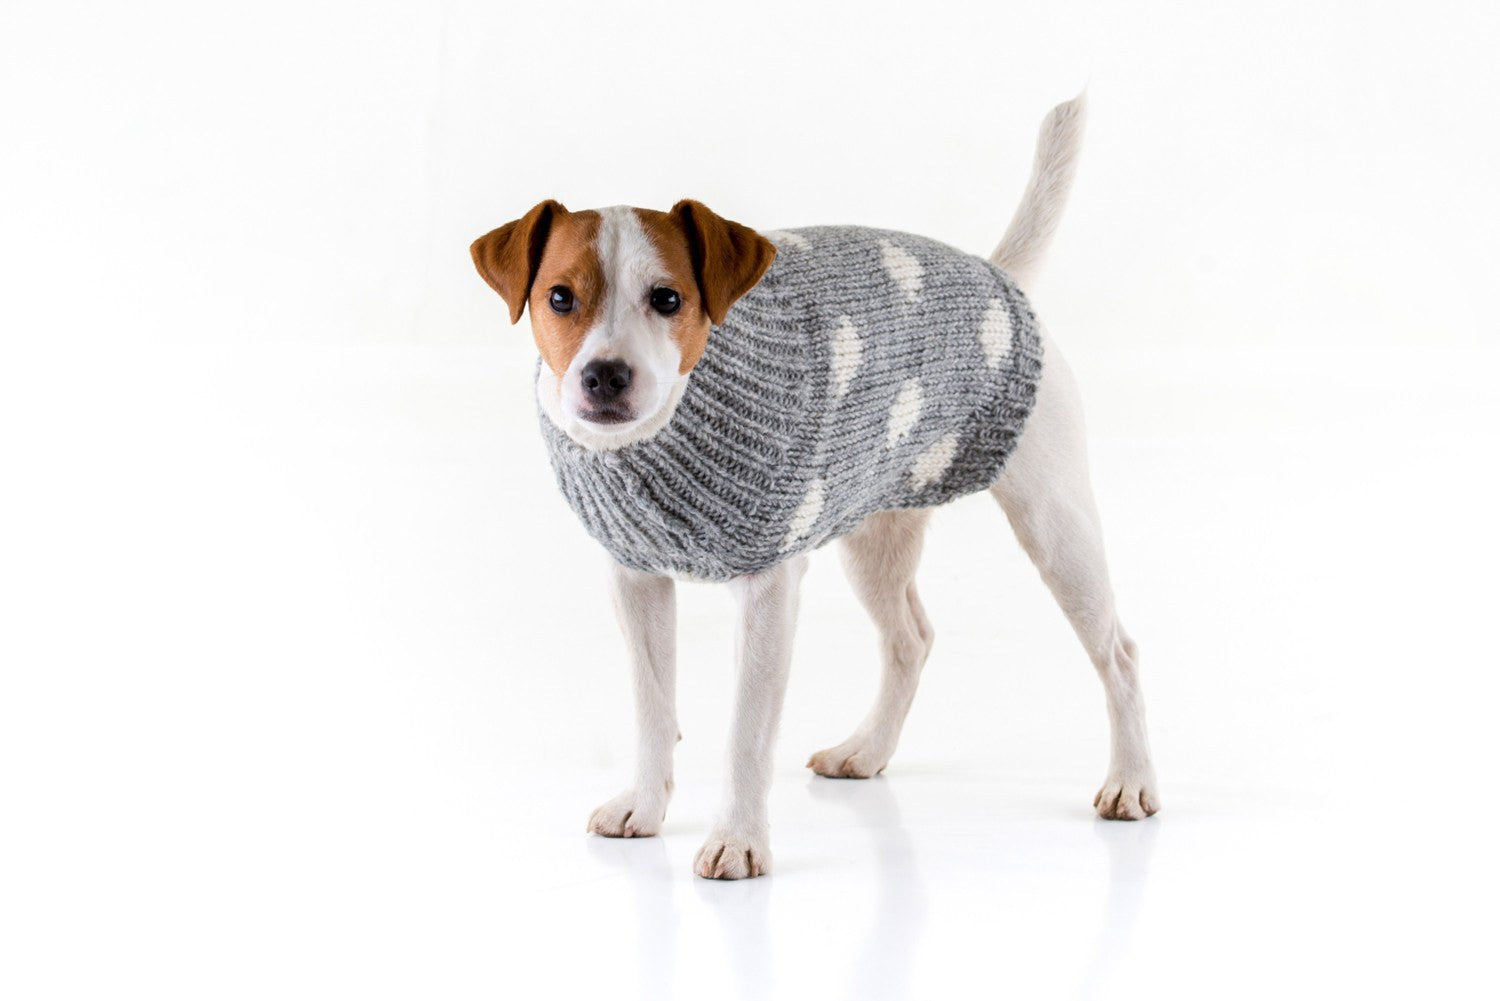 Jack Russell dog wearing a Yak wool Spotty jumper